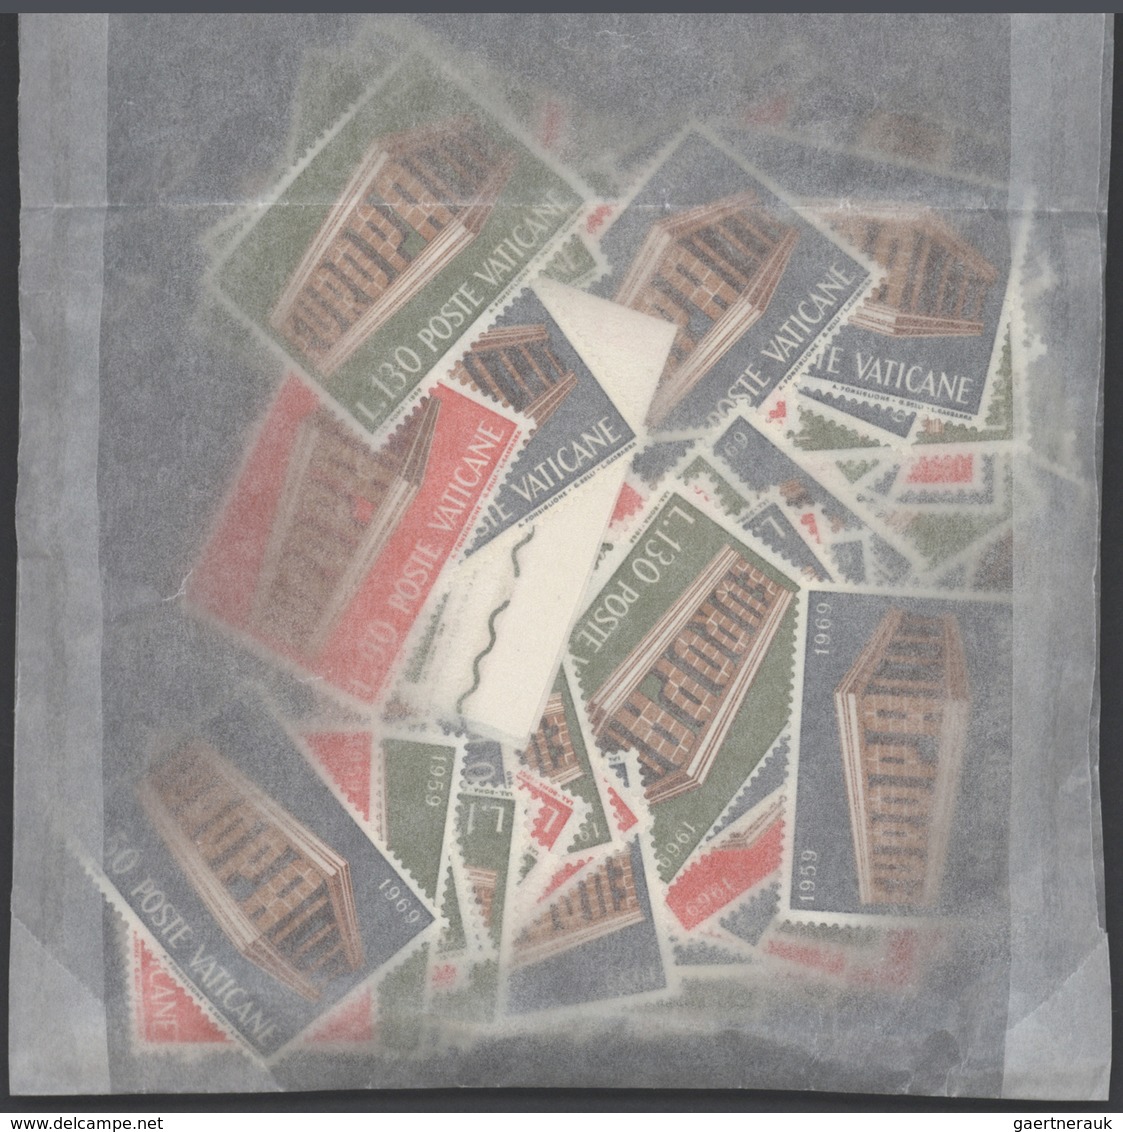 29889 Vatikan: 1969-1969: Bulk Lot, CEPT Stamps In Complete Sets. 1969: 7300 Sets, Postal Selling Price: 1 - Briefe U. Dokumente